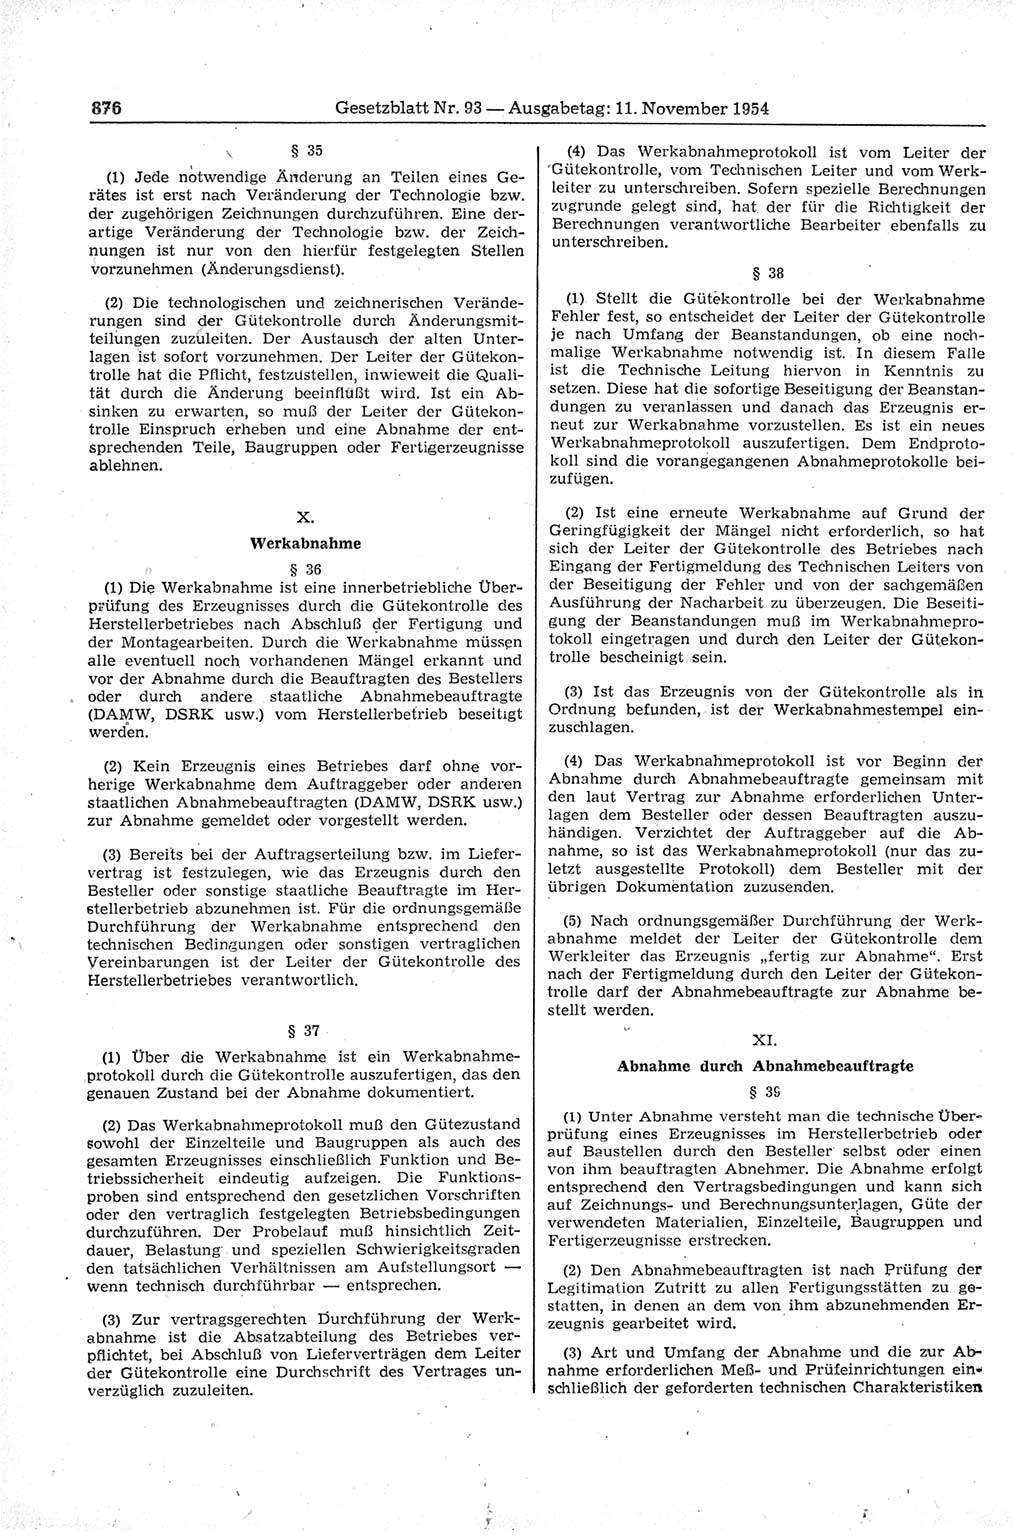 Gesetzblatt (GBl.) der Deutschen Demokratischen Republik (DDR) 1954, Seite 876 (GBl. DDR 1954, S. 876)